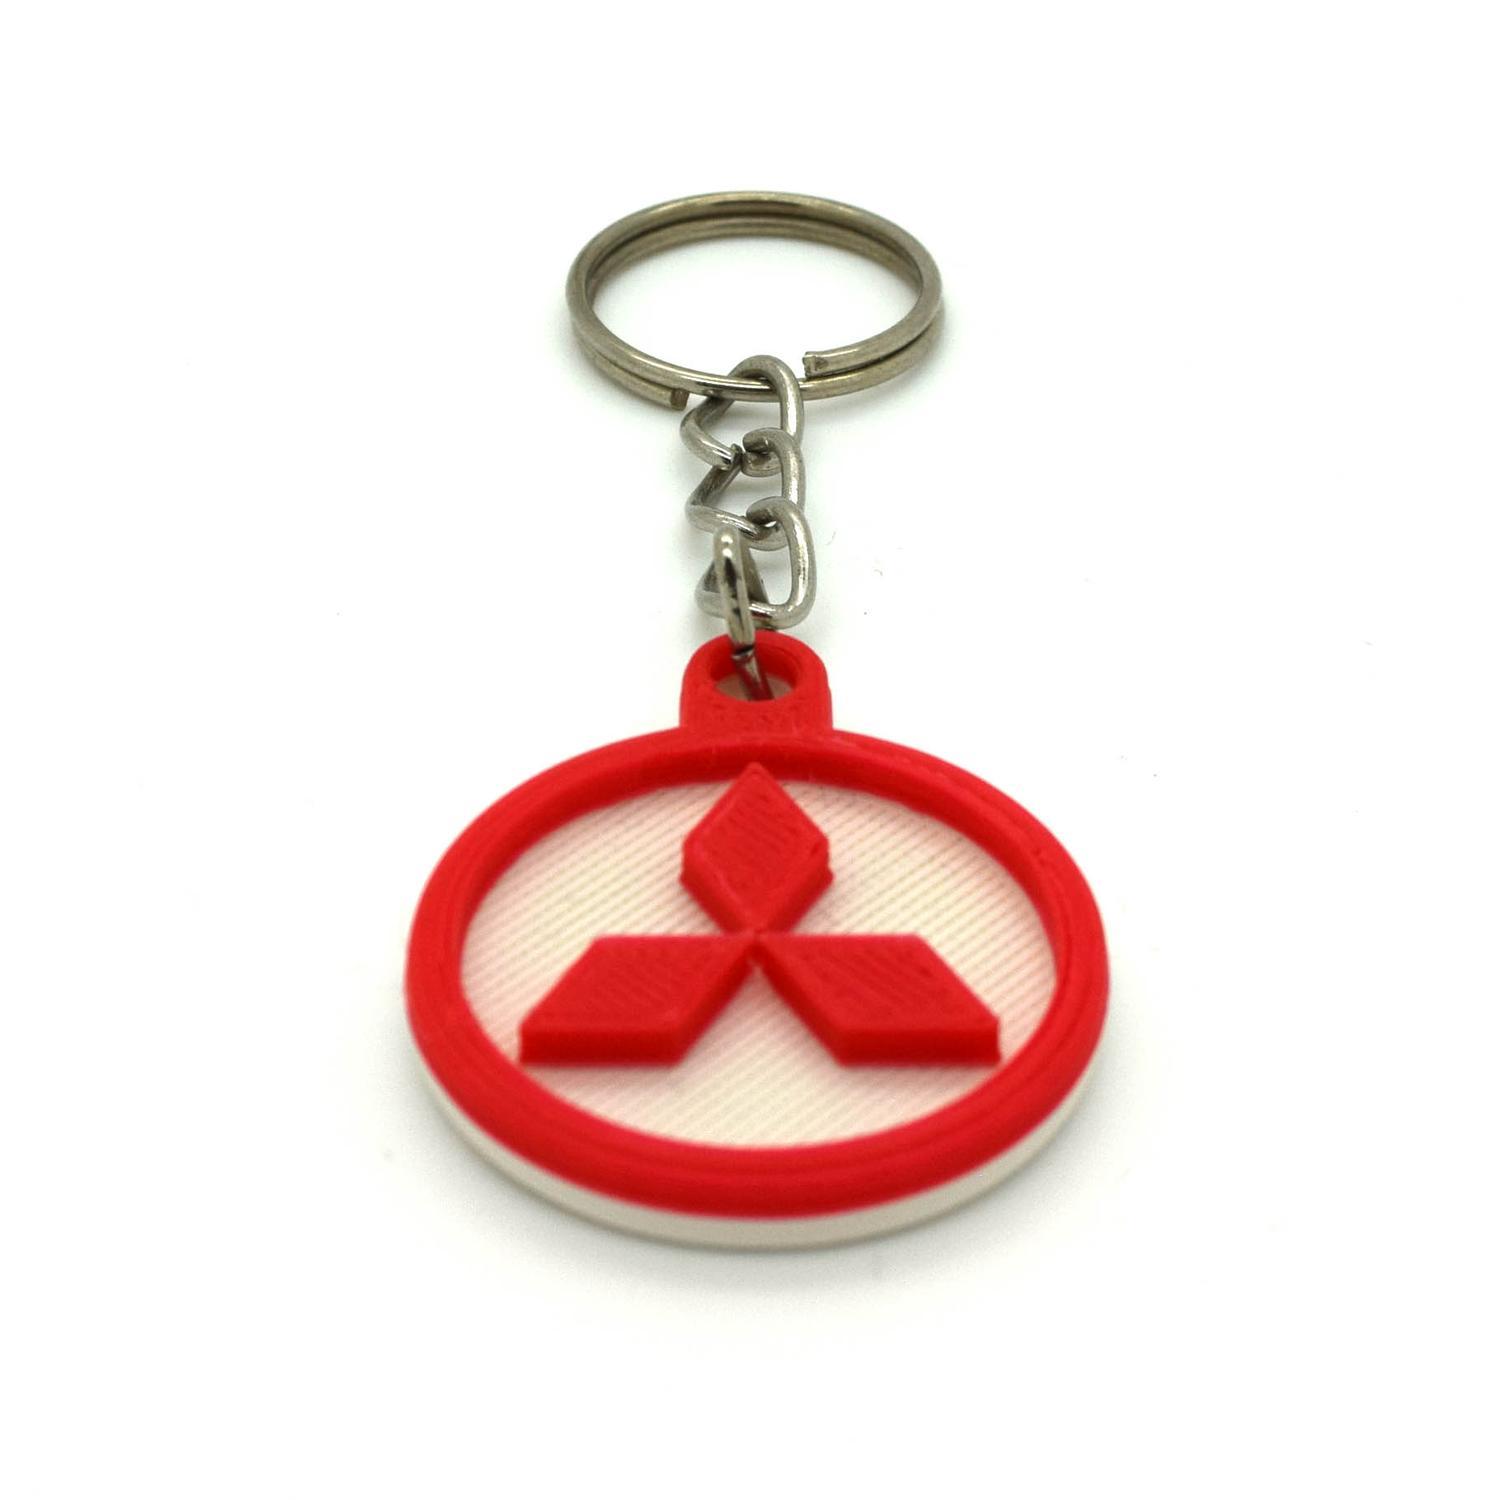 Mitsubishi key ring chain accessories